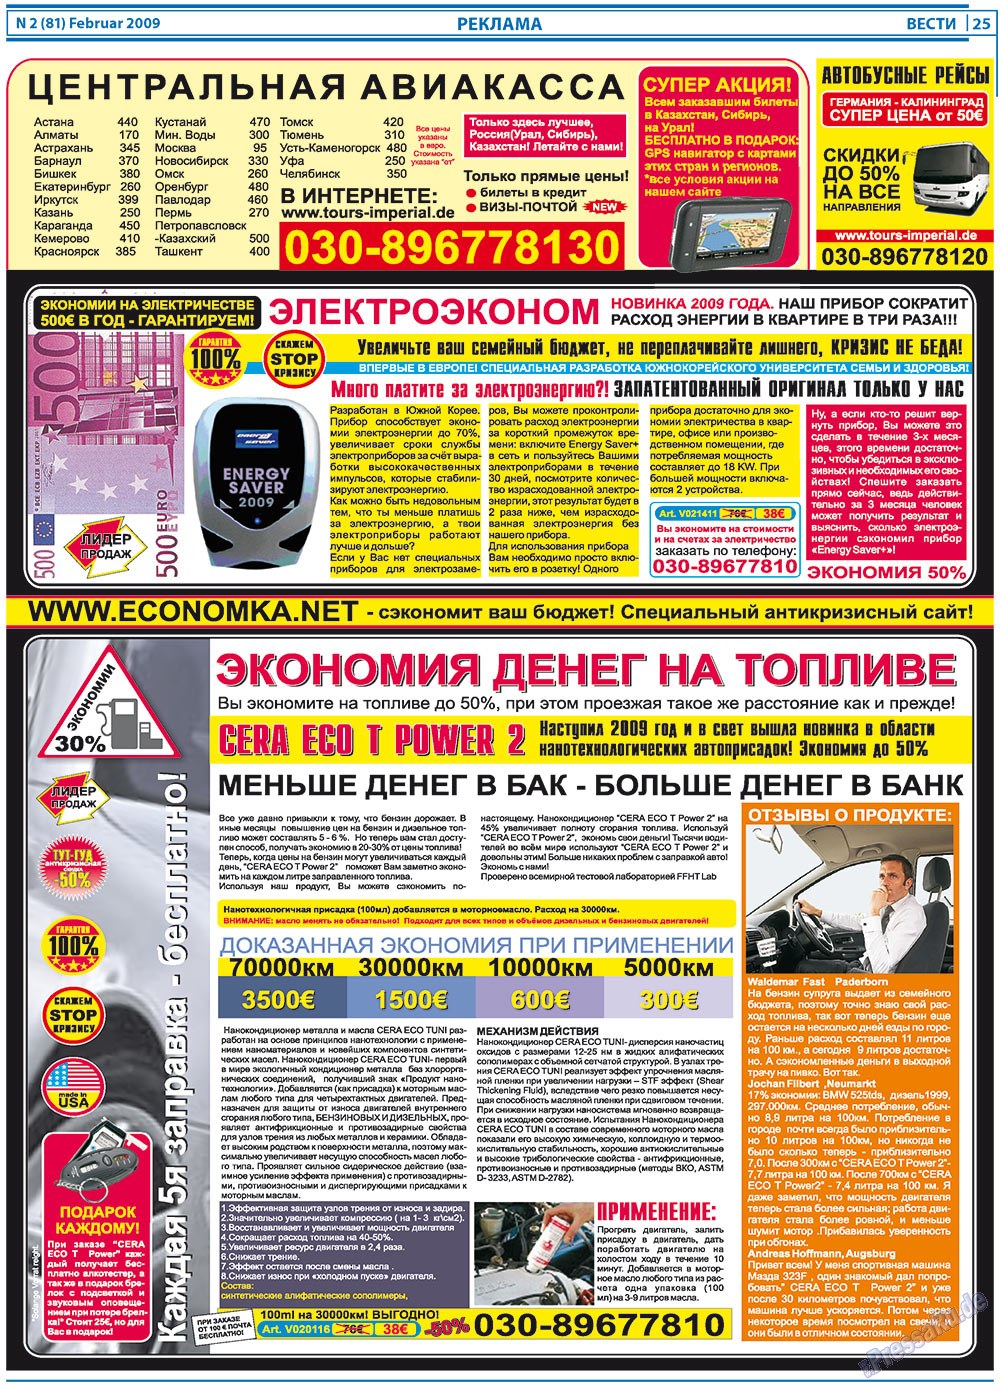 Вести, газета. 2009 №2 стр.25